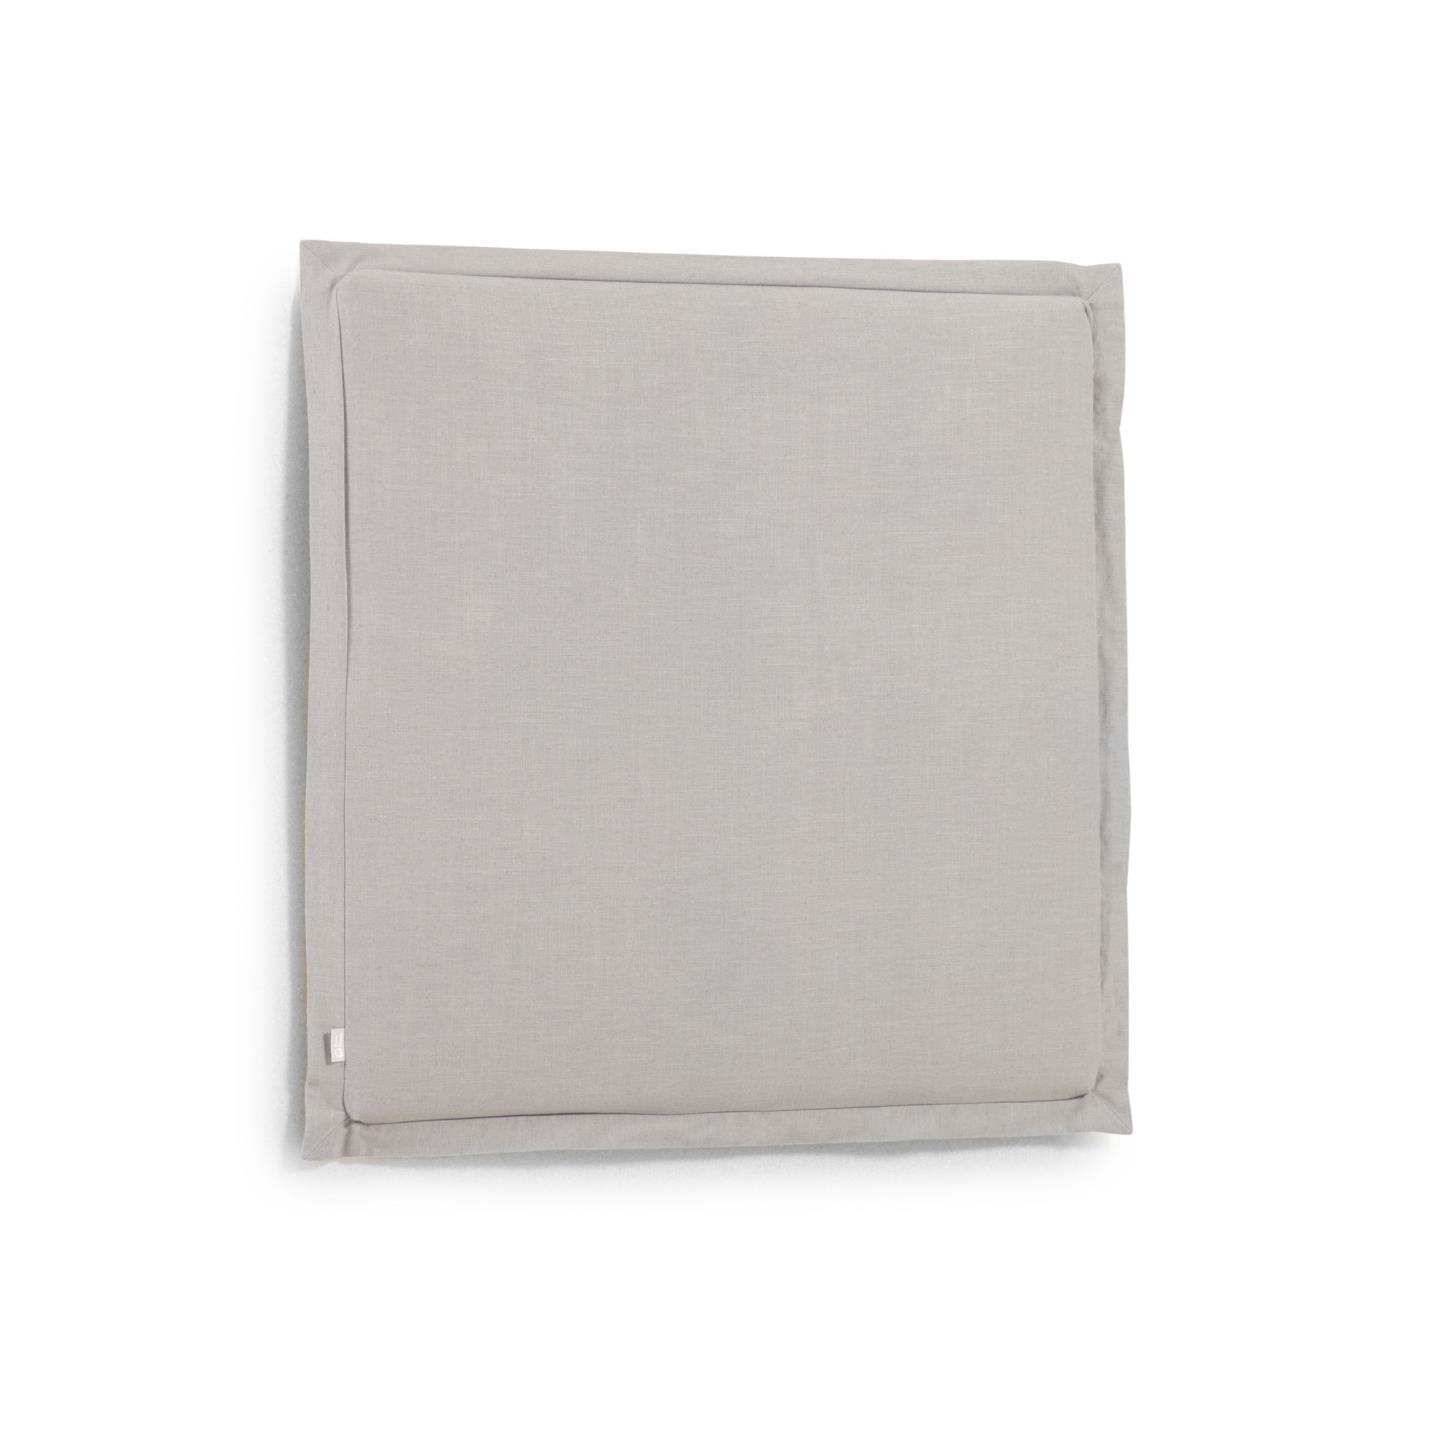 Изголовье La Forma лен серого цвета Tanit со съемным чехлом 106 x 106 см